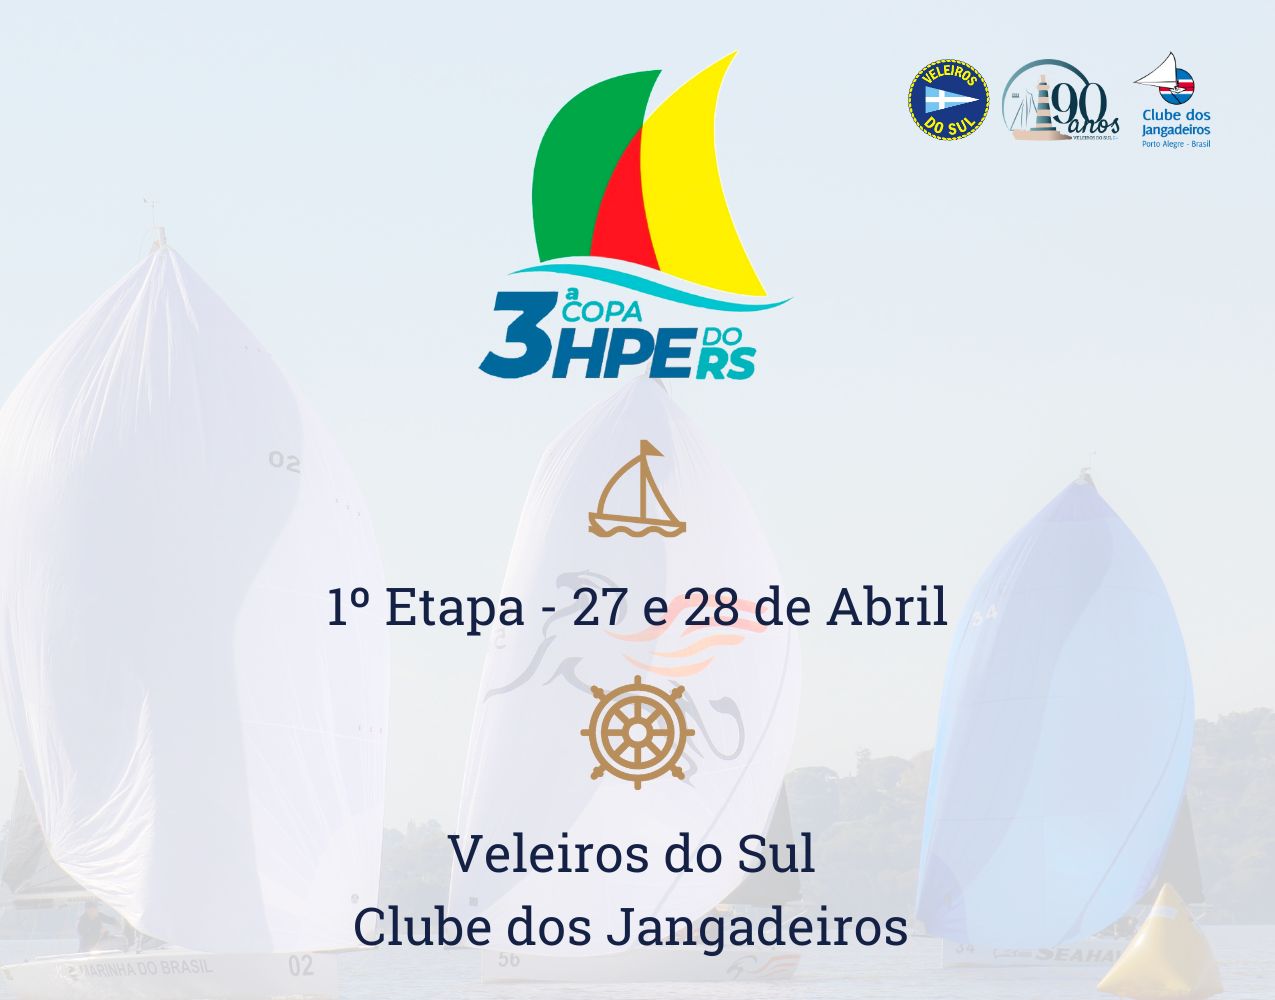 Primeira etapa da 3º Copa HPE25, HPE 30 e J70 tem nova data: Dias 27 e 28 de abril